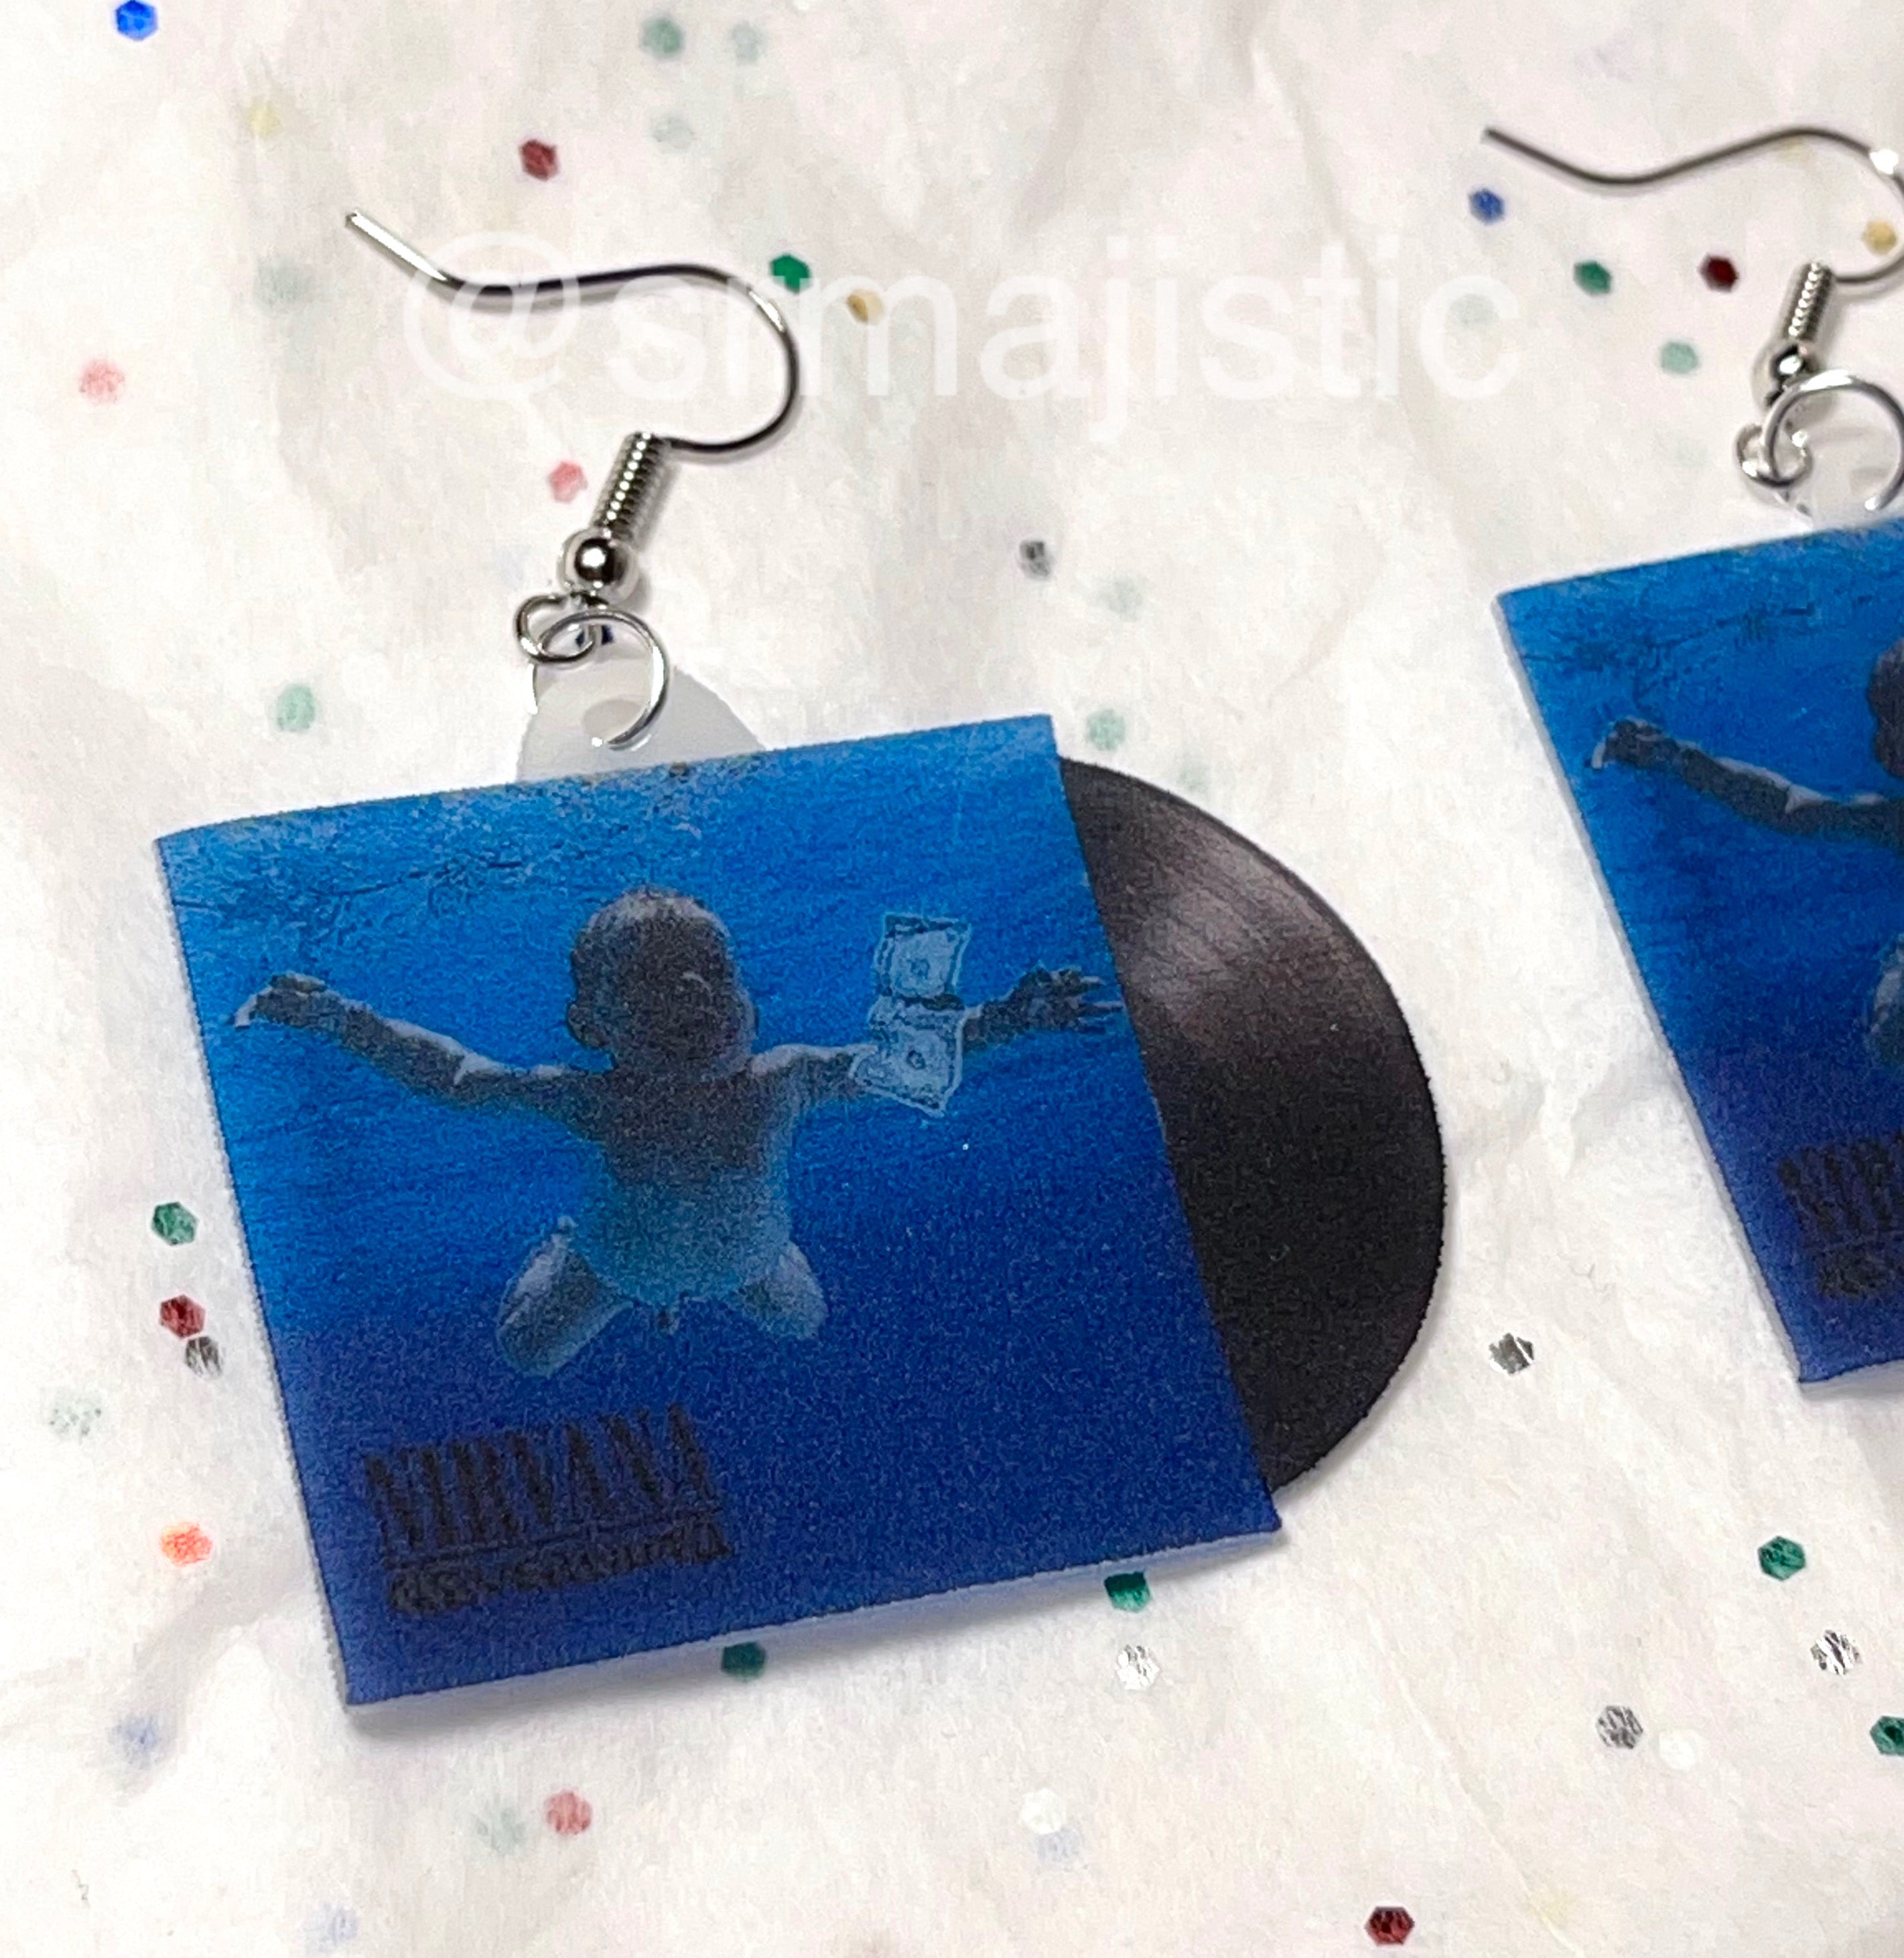 Nirvana Nevermind Vinyl Album Handmade Earrings!